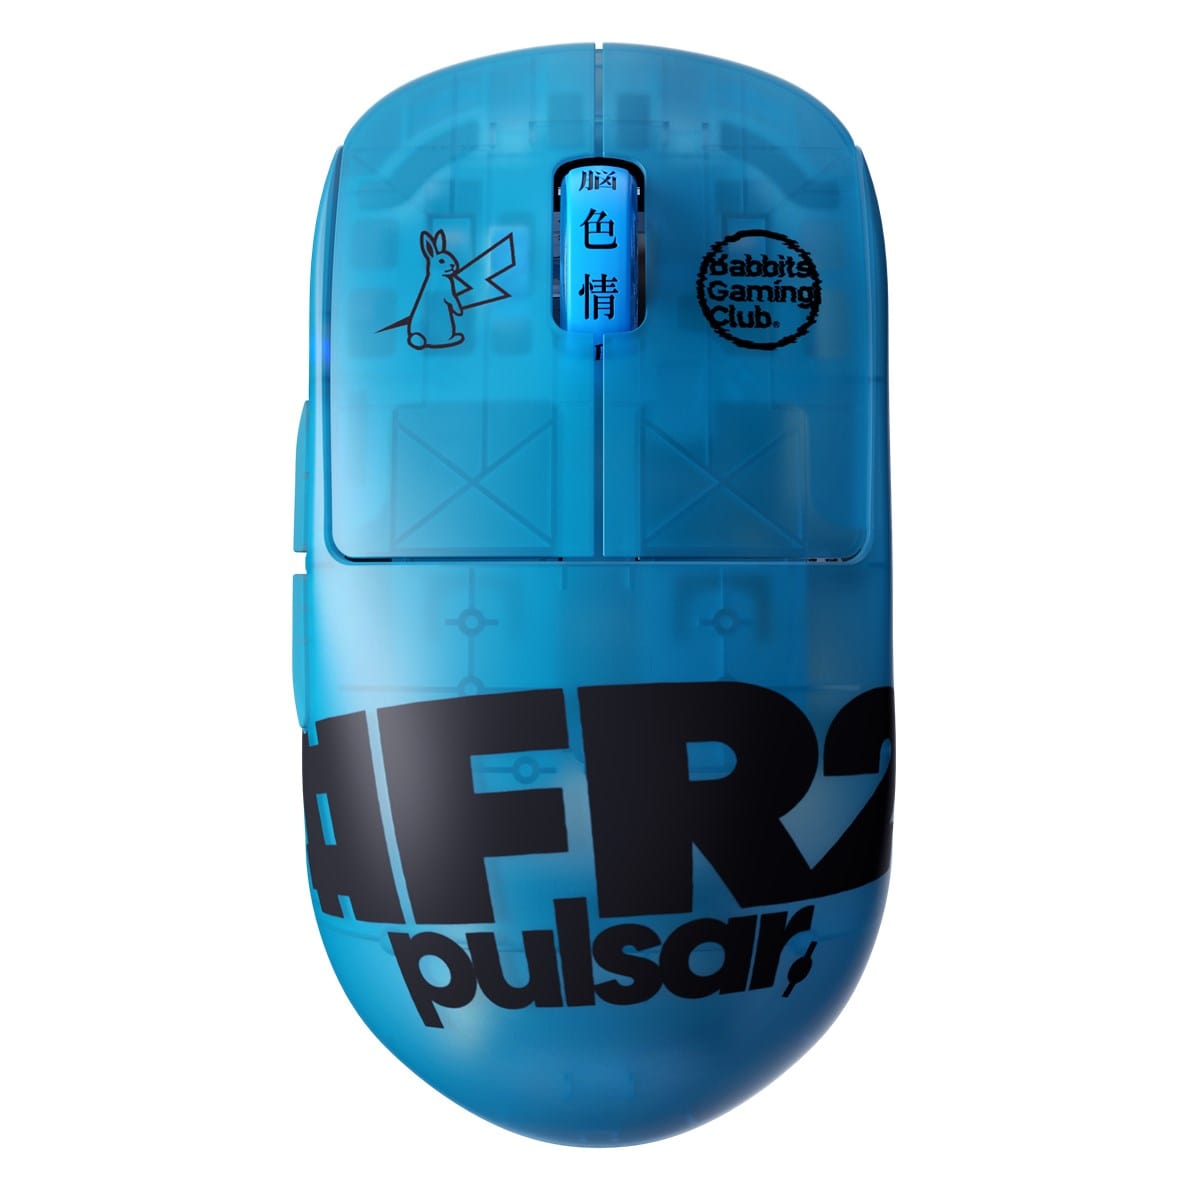 Chuột không dây siêu nhẹ Pulsar X2H #FR2 Edition (Hỗ trợ 4K Polling Rate) - Limited Edition